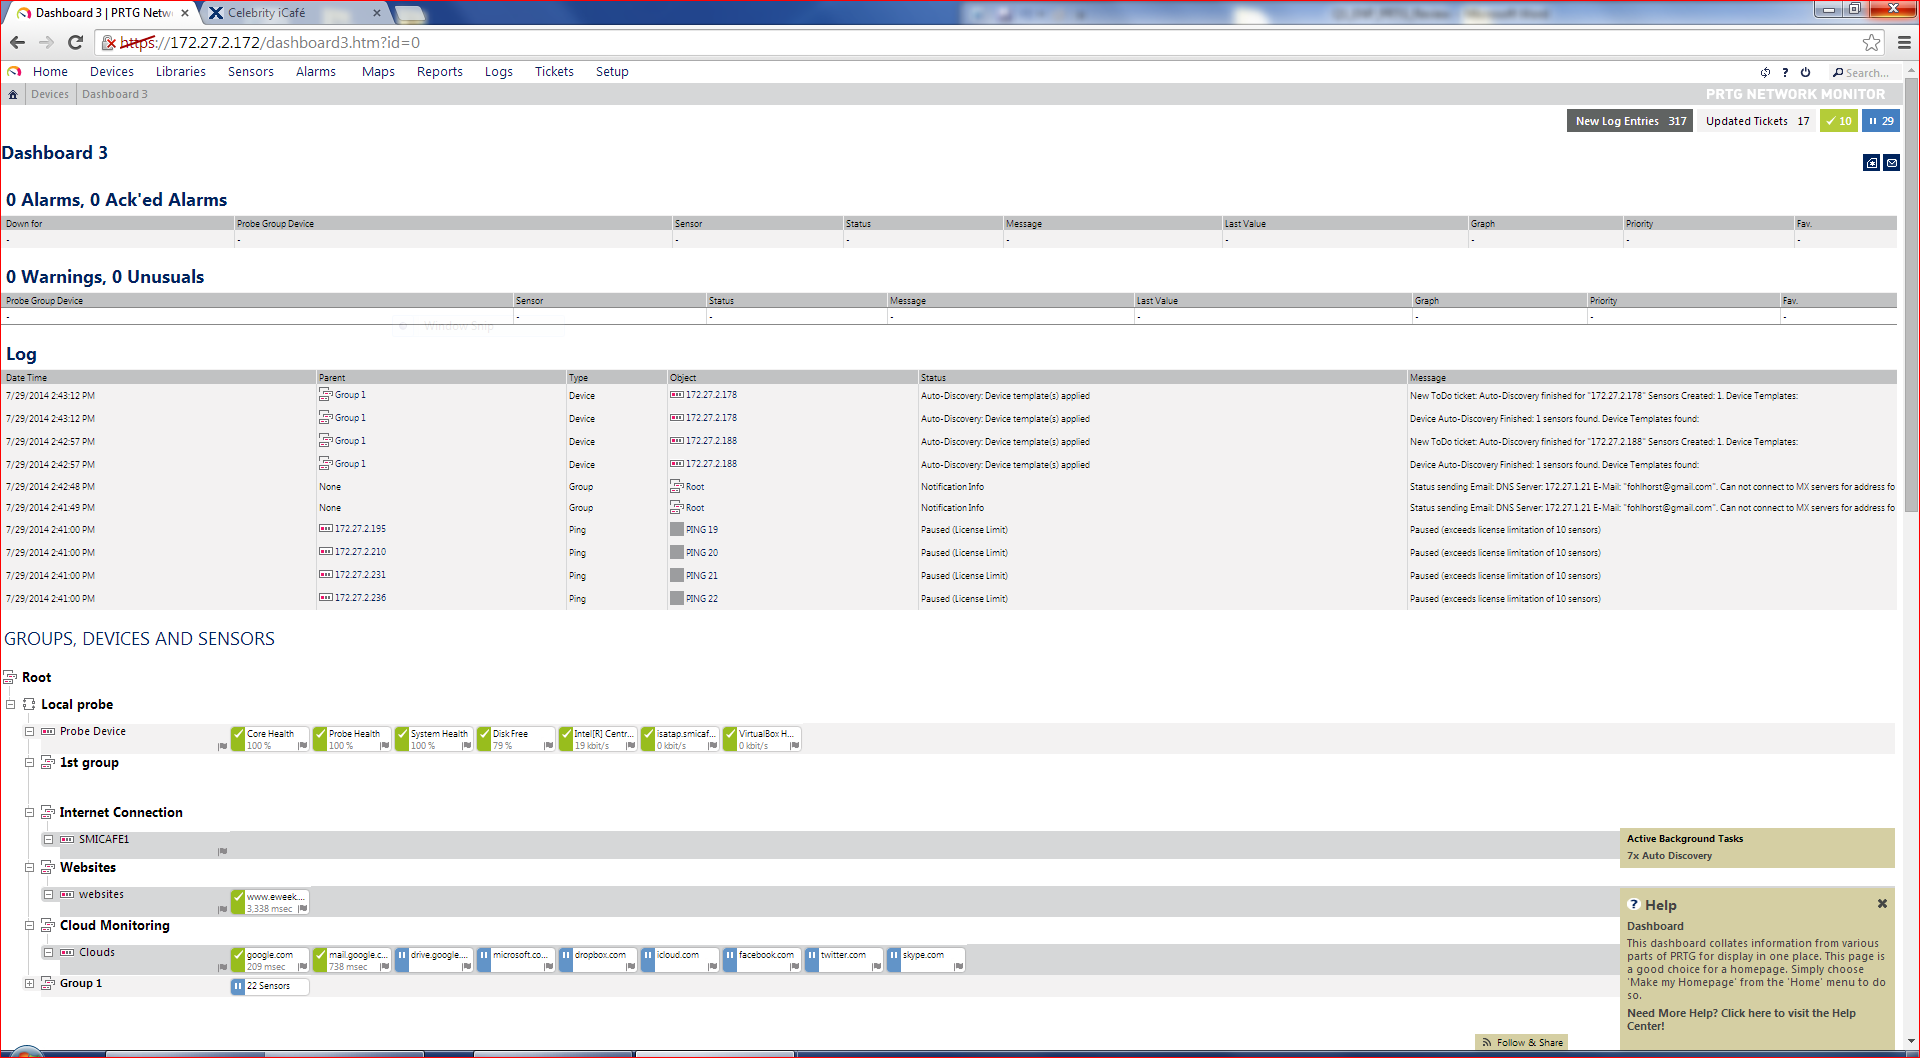 Paessler PRTG Network Monitor v14 Dashboard 2